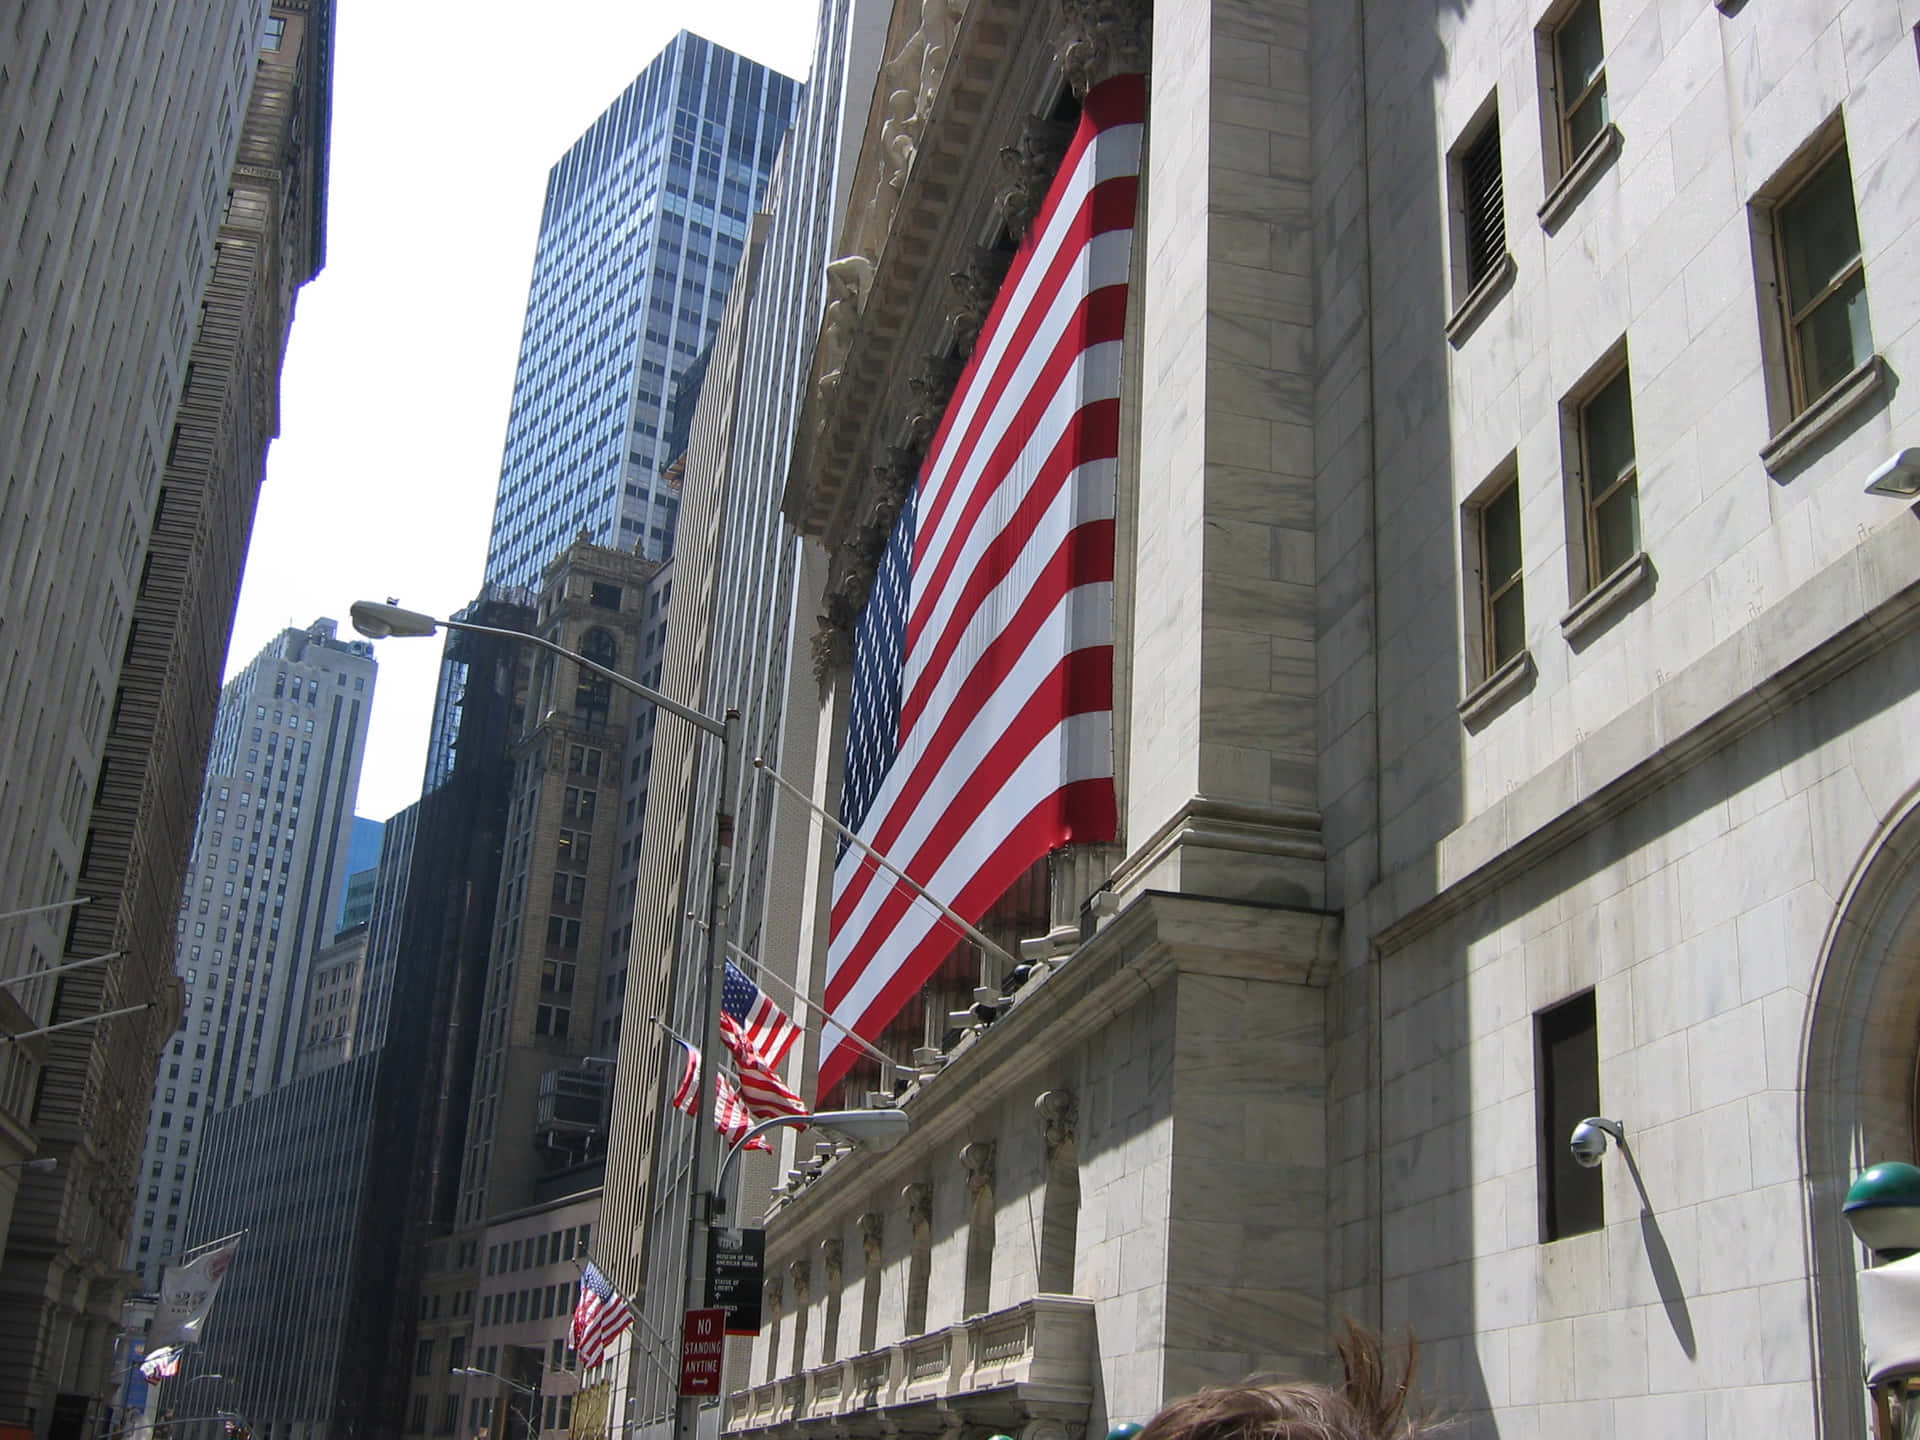 Engigantisk Wall Street-skylt Fångar Andan I Det Finansiella Distriktet I New York City. Wallpaper